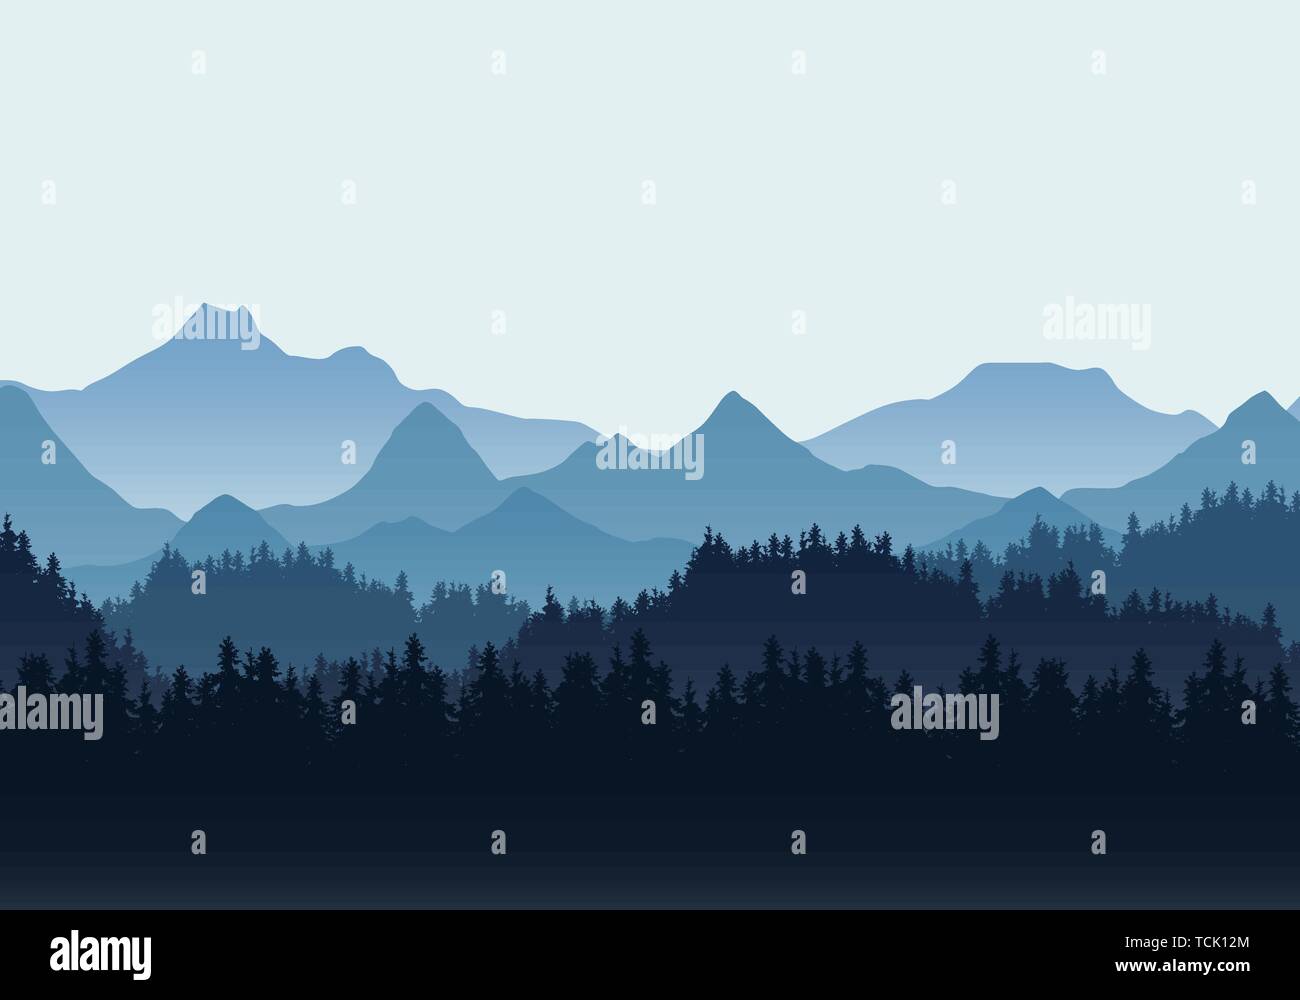 Realistische Darstellung der Landschaft mit Hügeln und Nadelwald unter blauem Himmel. Geeignet als Urlaub oder Reisen Anzeige - Vektor Stock Vektor